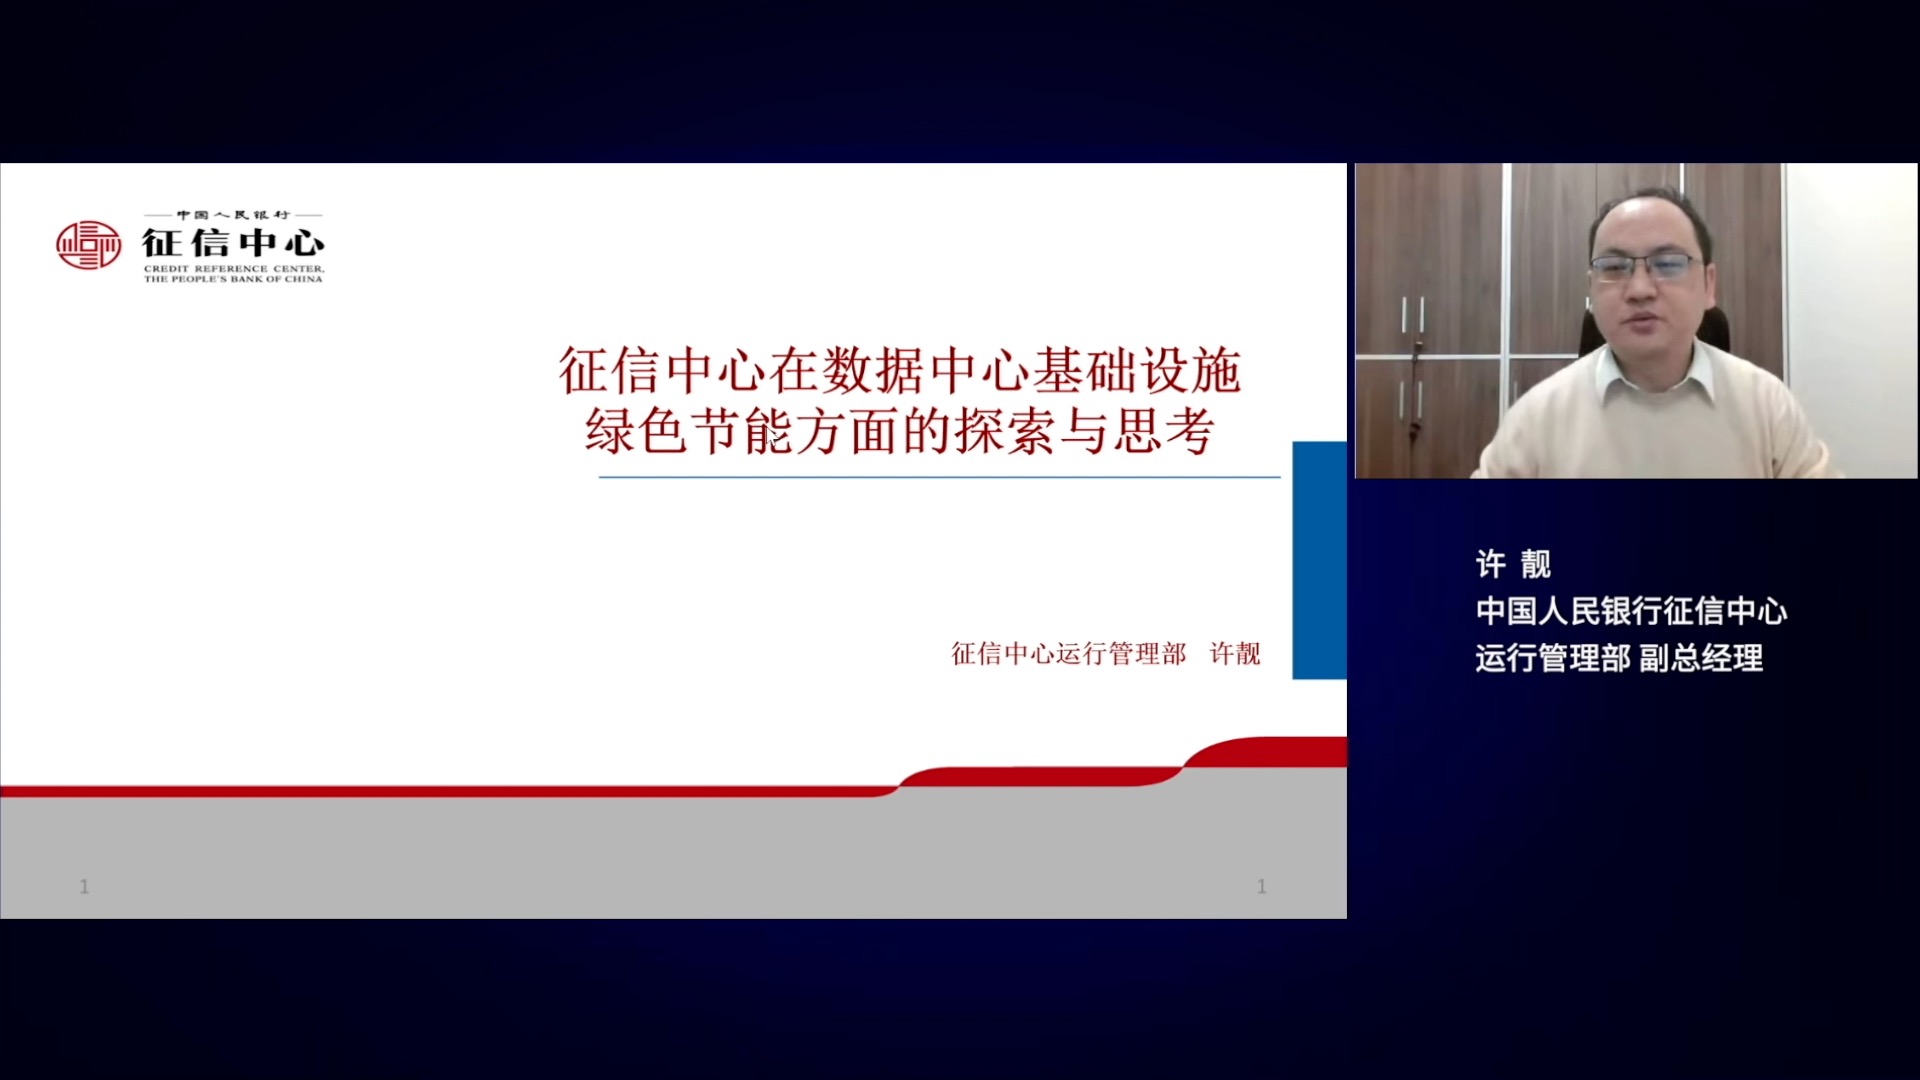 中国人民银行征信中心运行管理部副总经理许靓